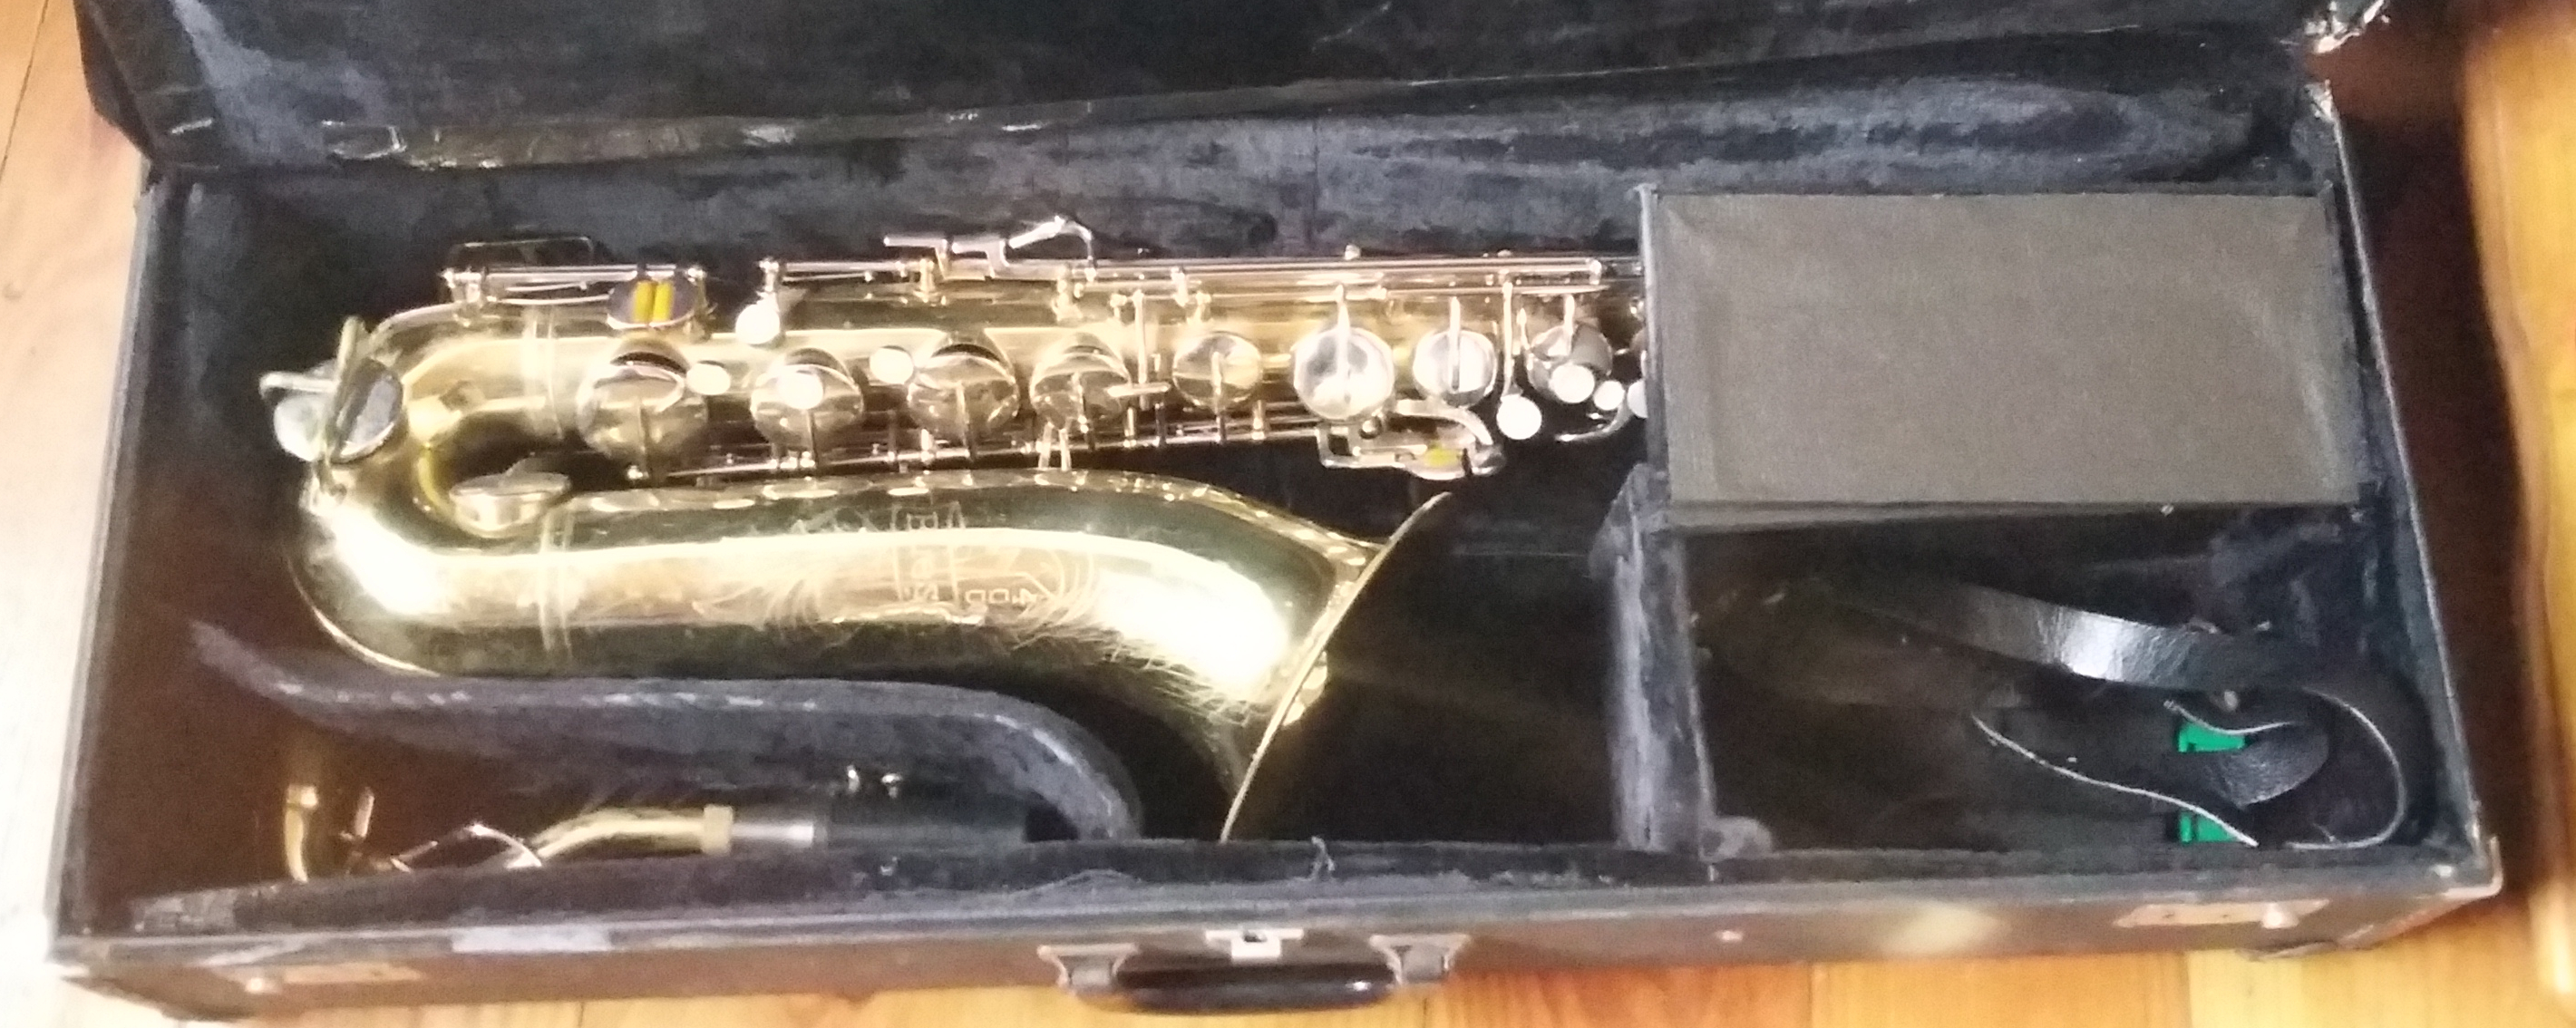 Beuscher tenor saxophone